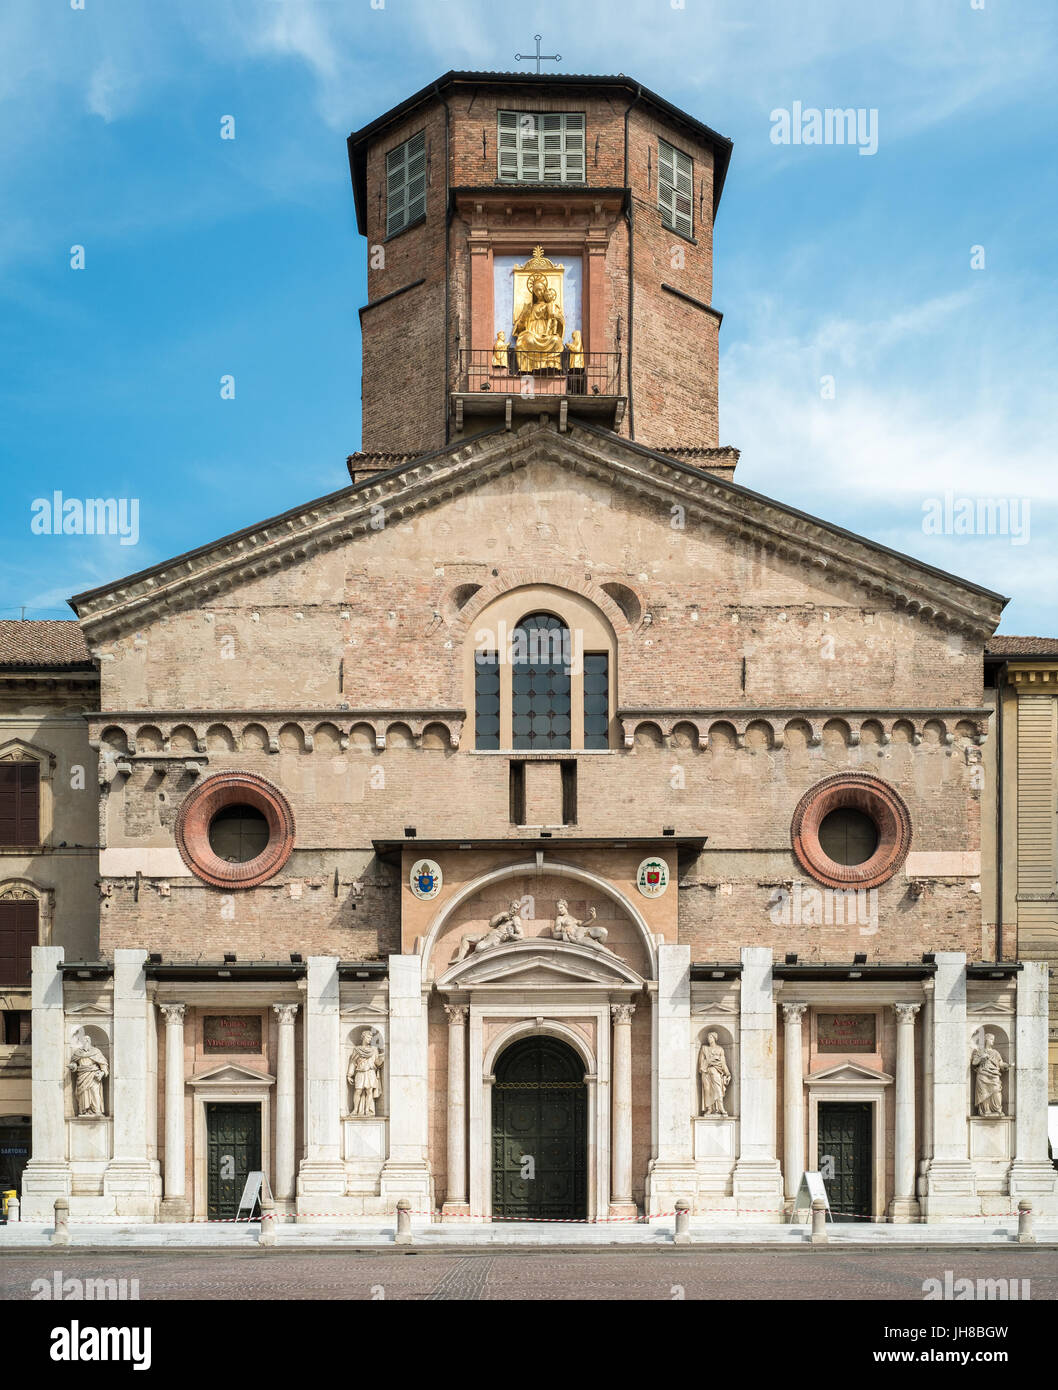 Vista frontal de la cúpula de Reggio Emilia, Emilia Romagna, Italia Foto de stock